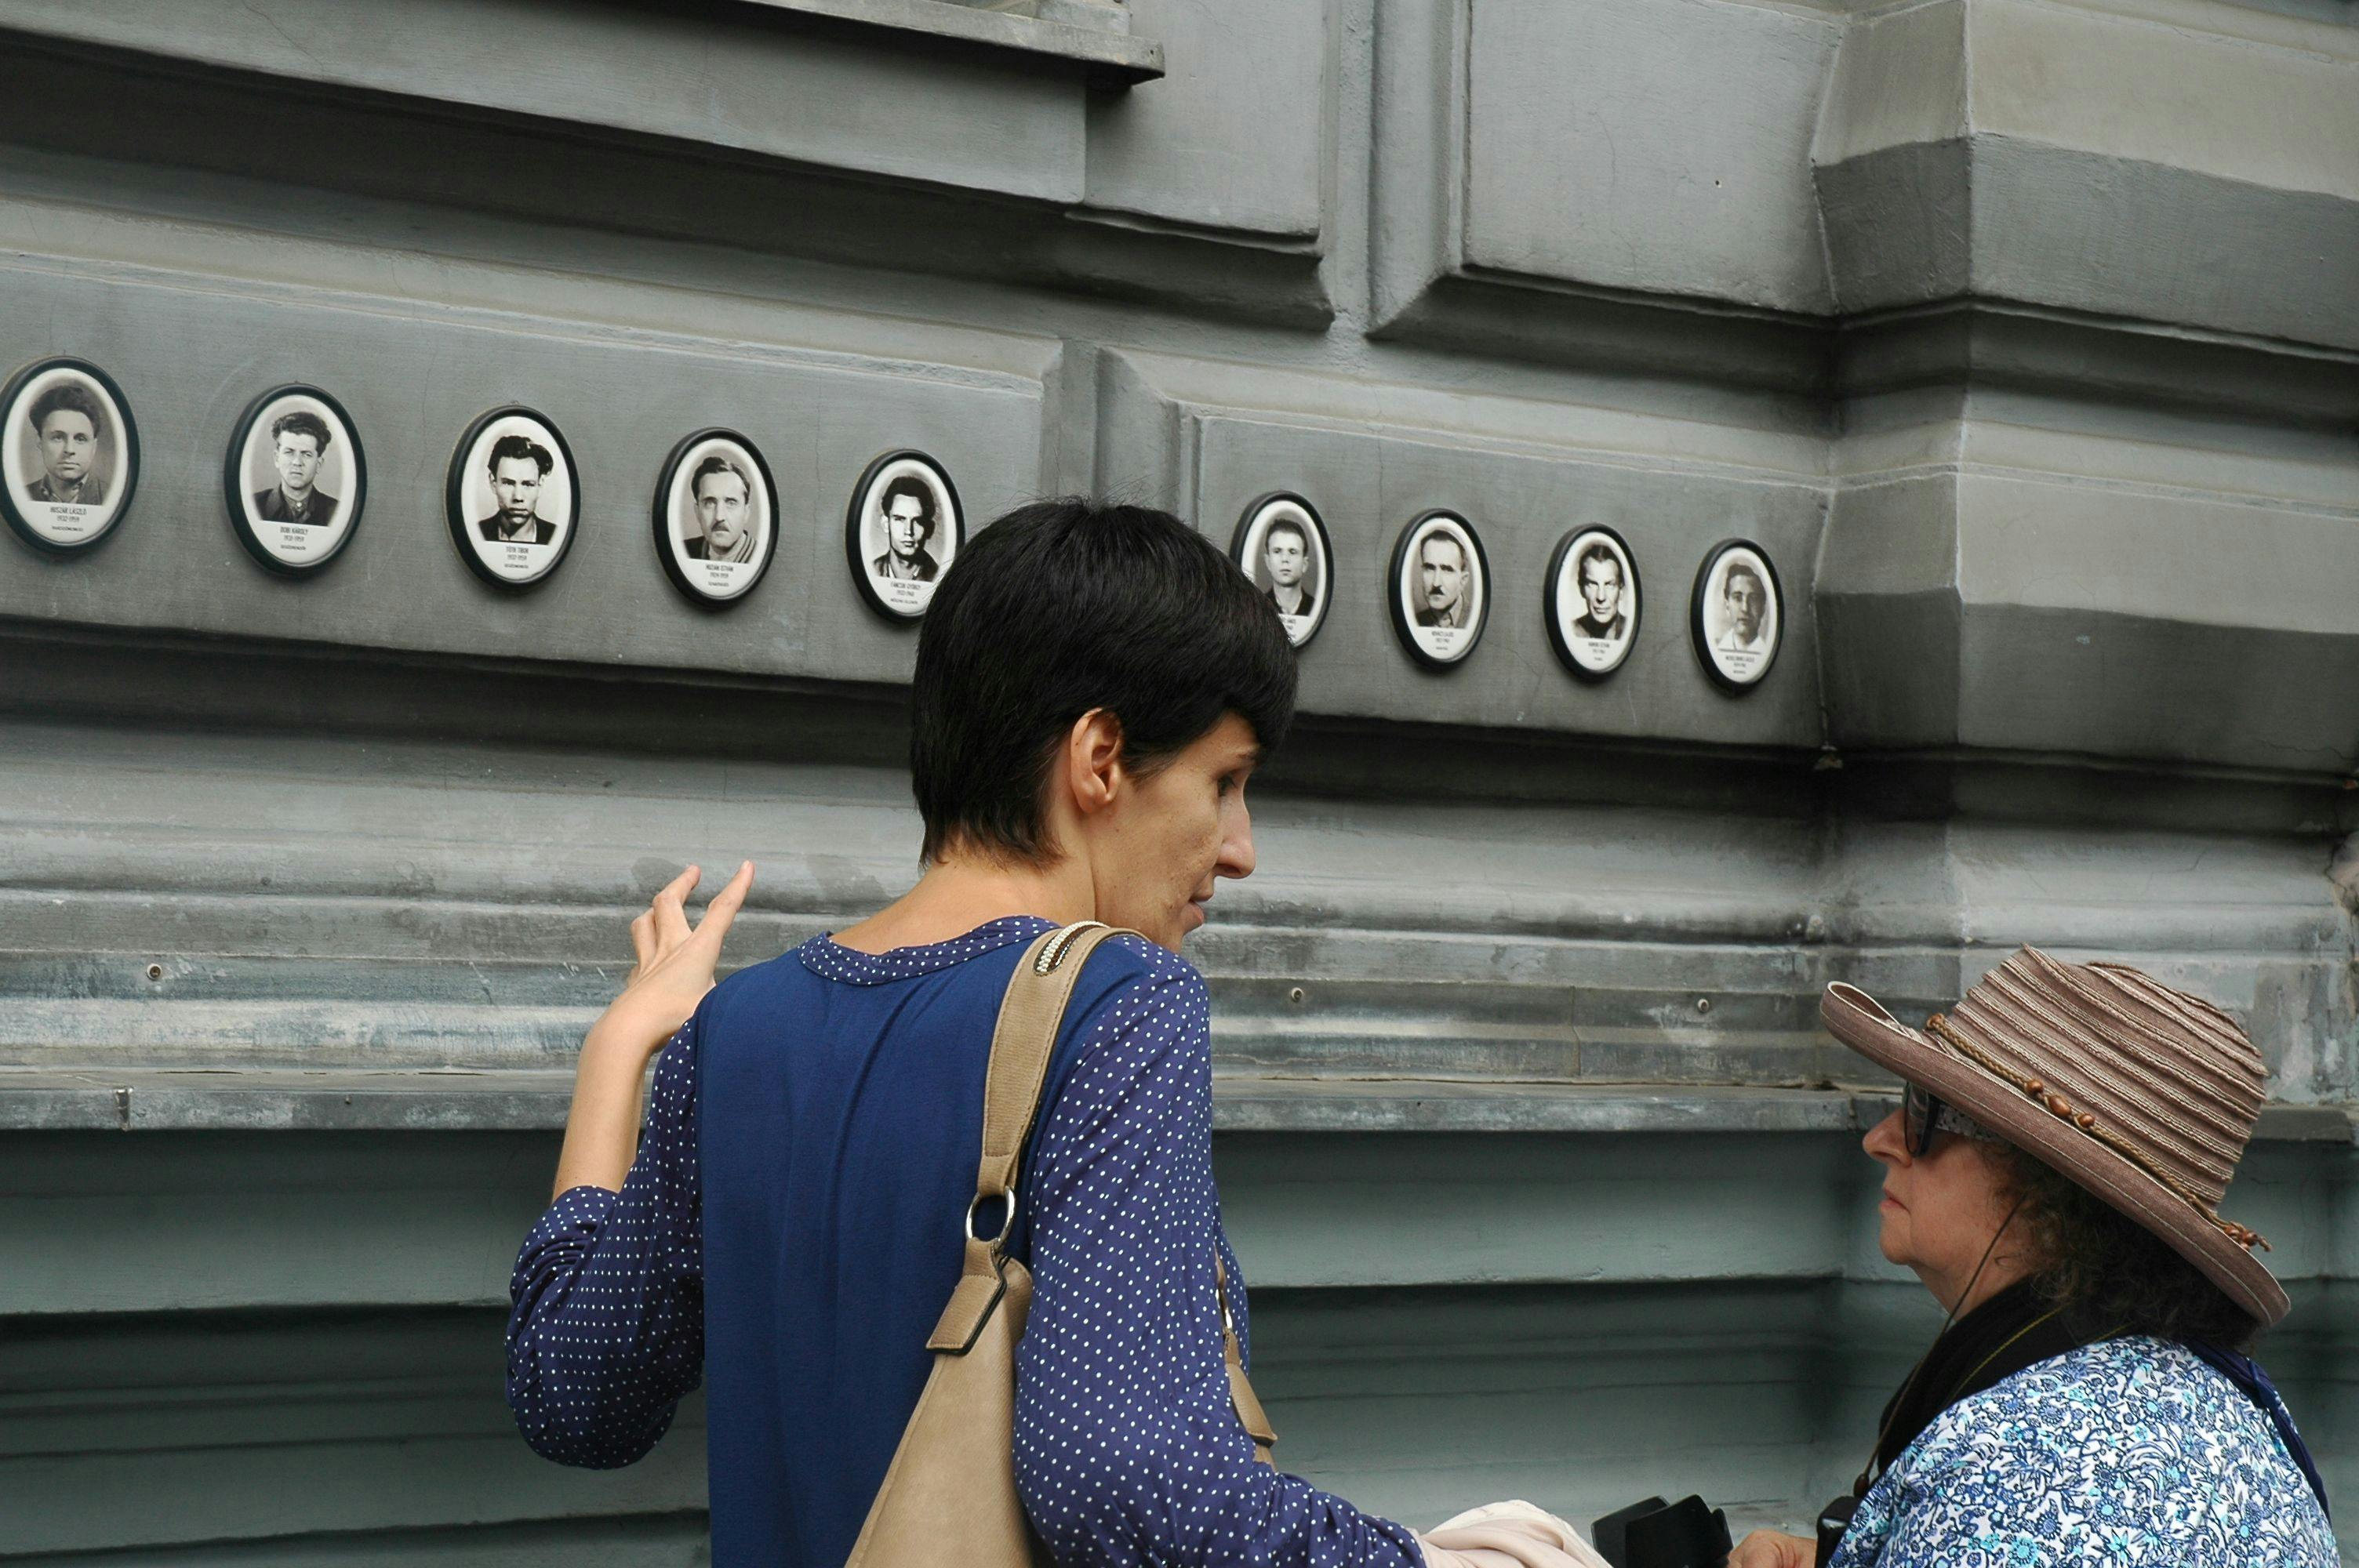 Budapeste Comunista: A "Caserna Mais Alegre" do Bloco Soviético